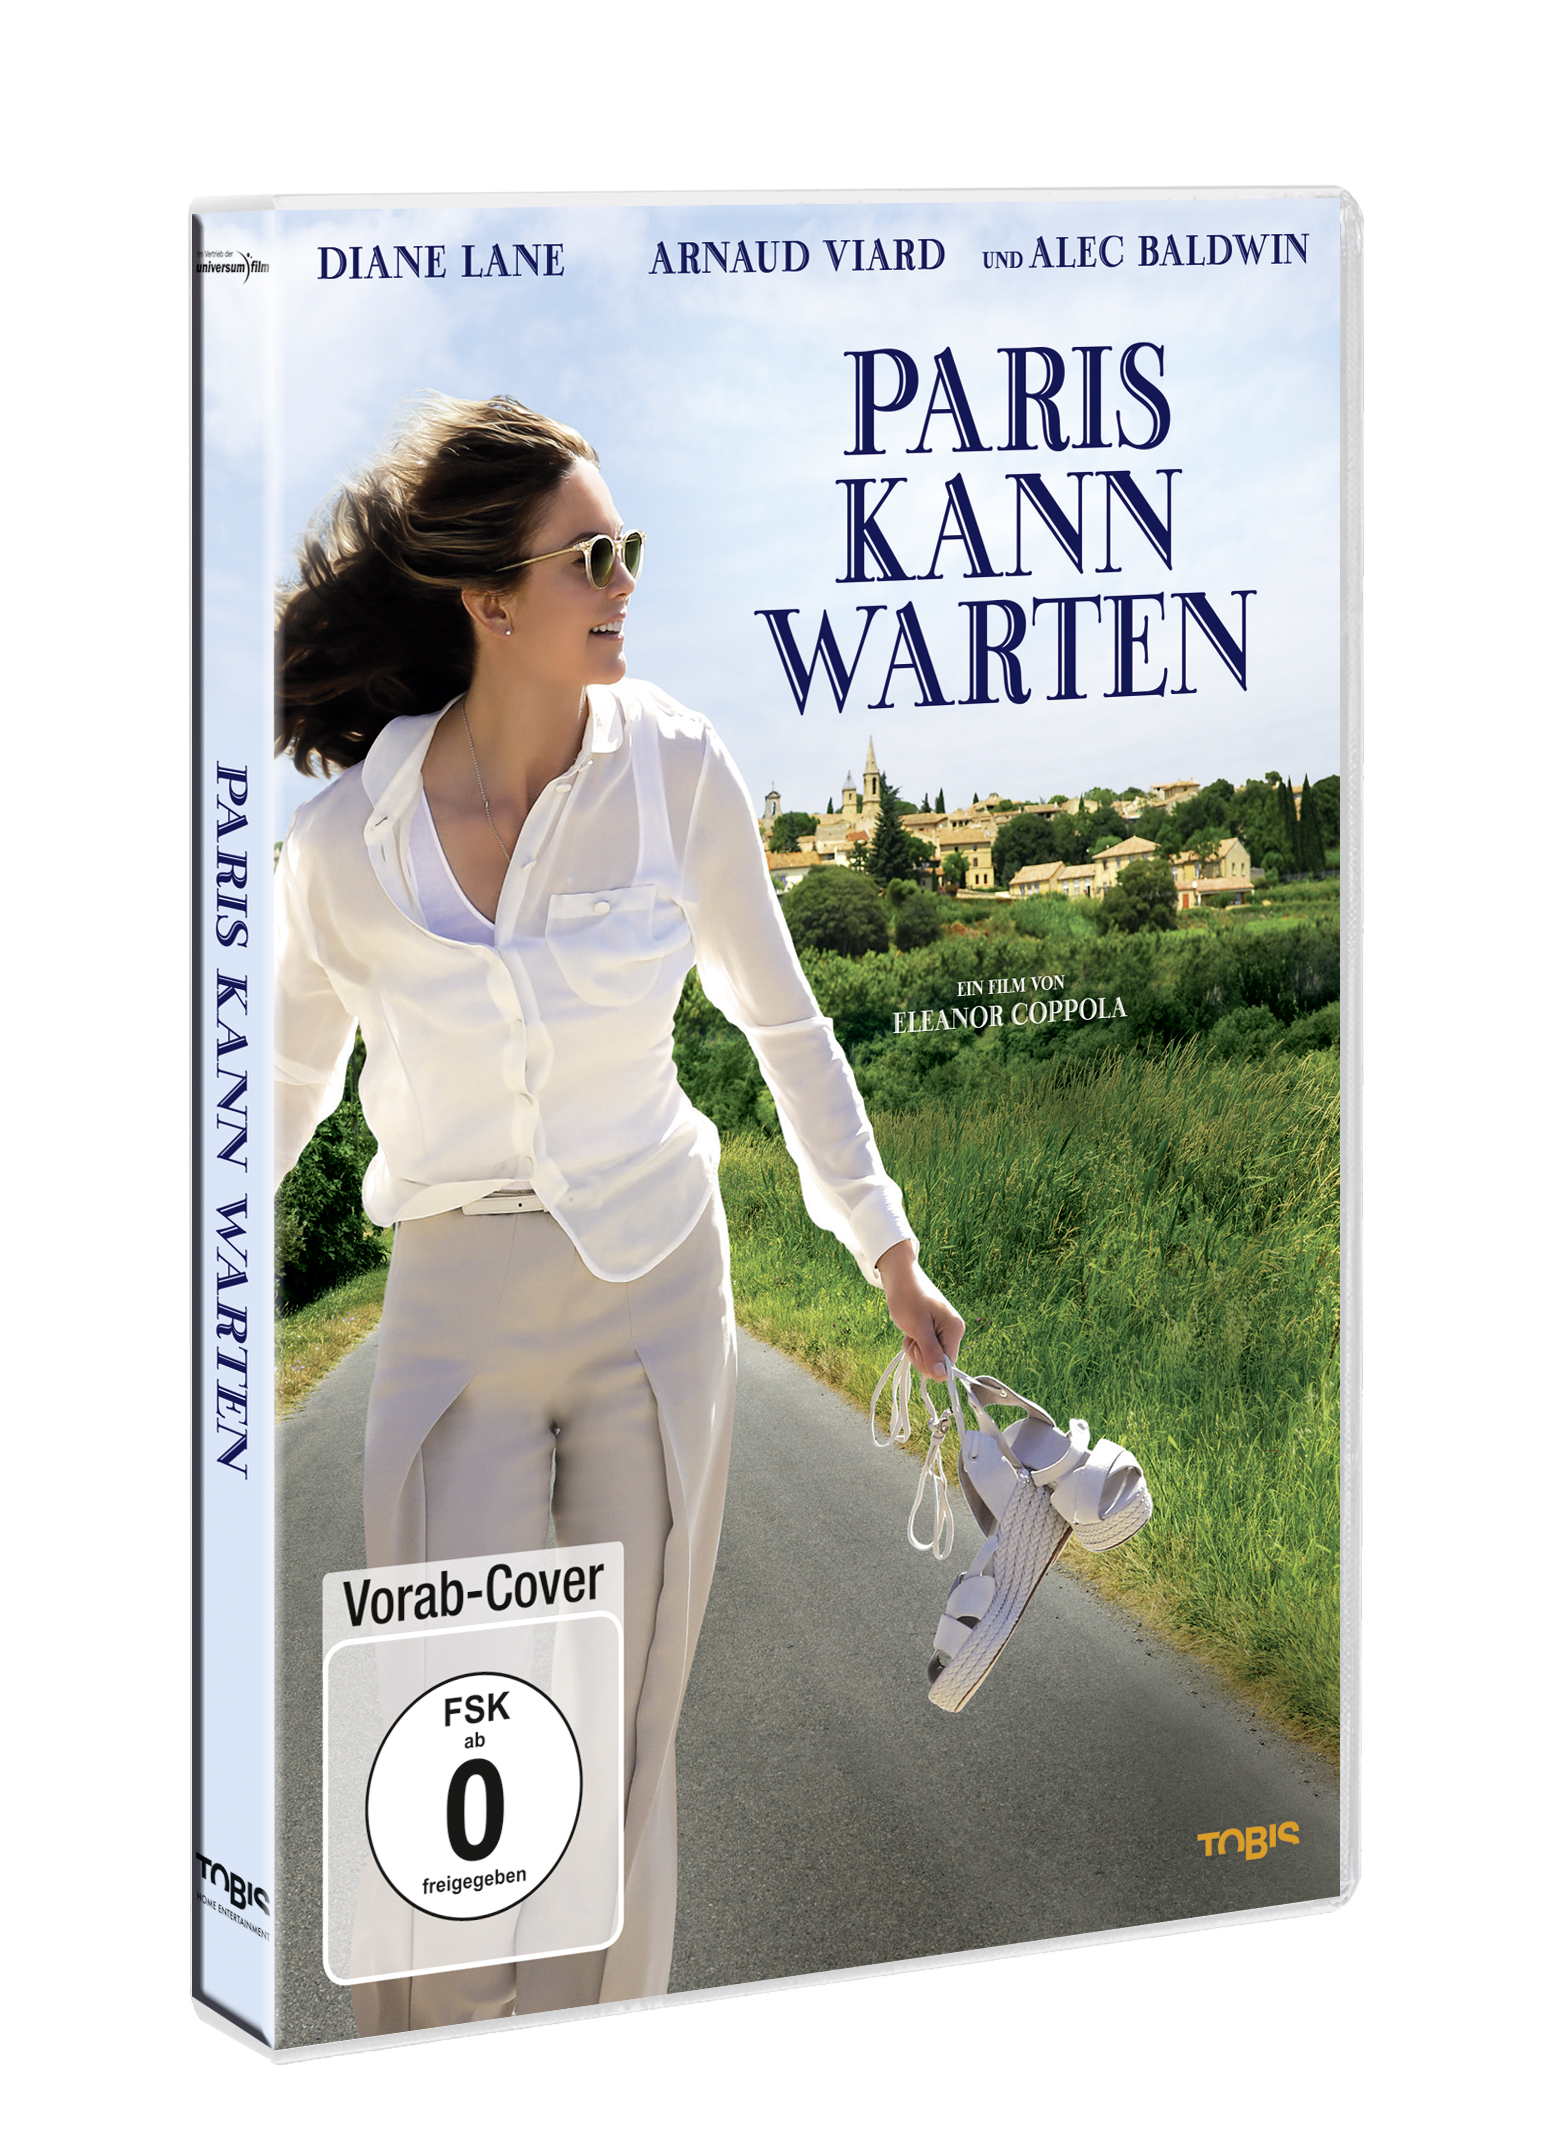 Paris DVD warten kann